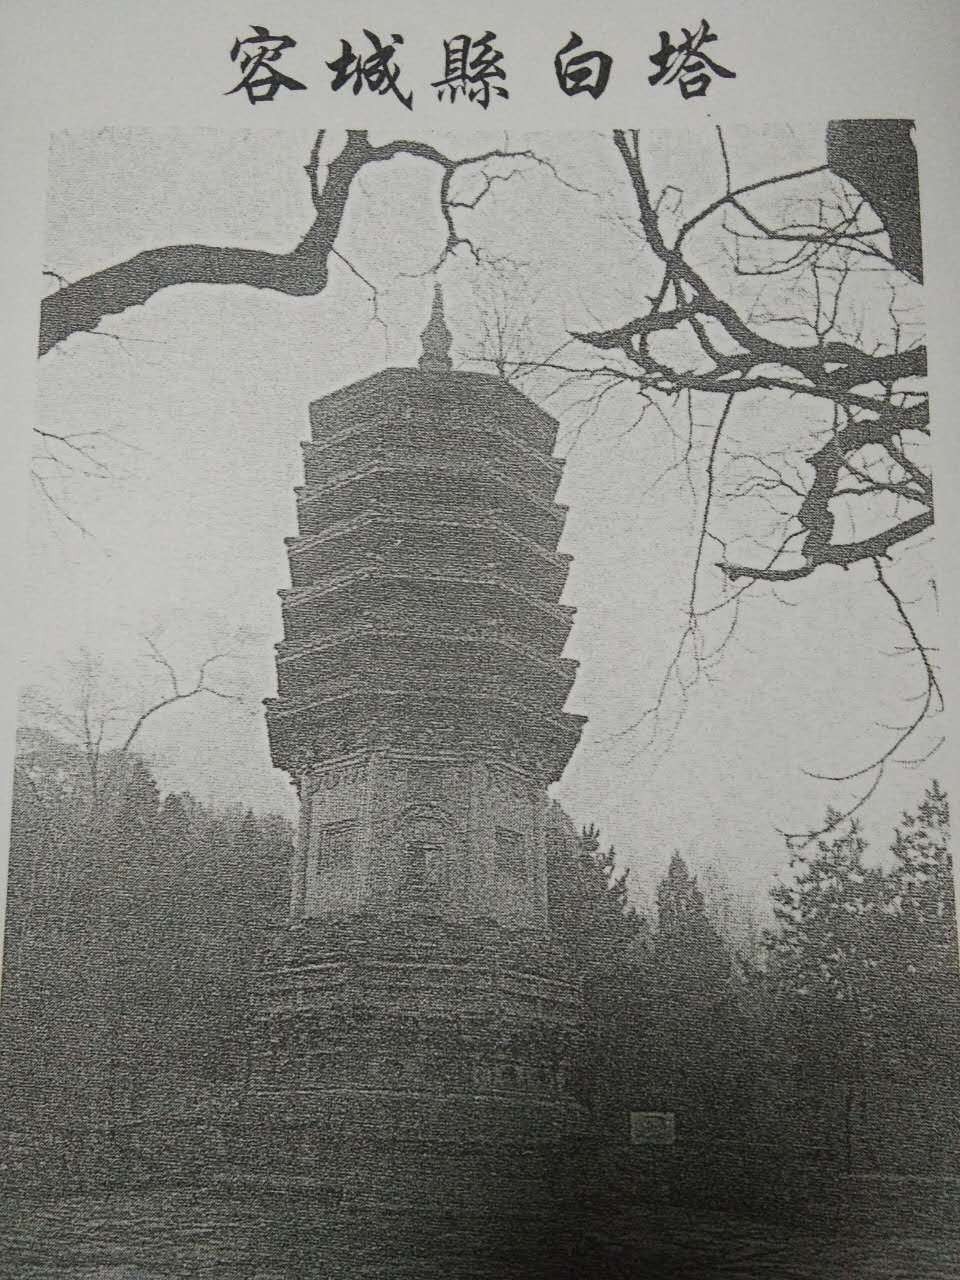 白塔村的塔建于五代时期至唐初，当时有塔两座，因外形白色称为大小白塔。